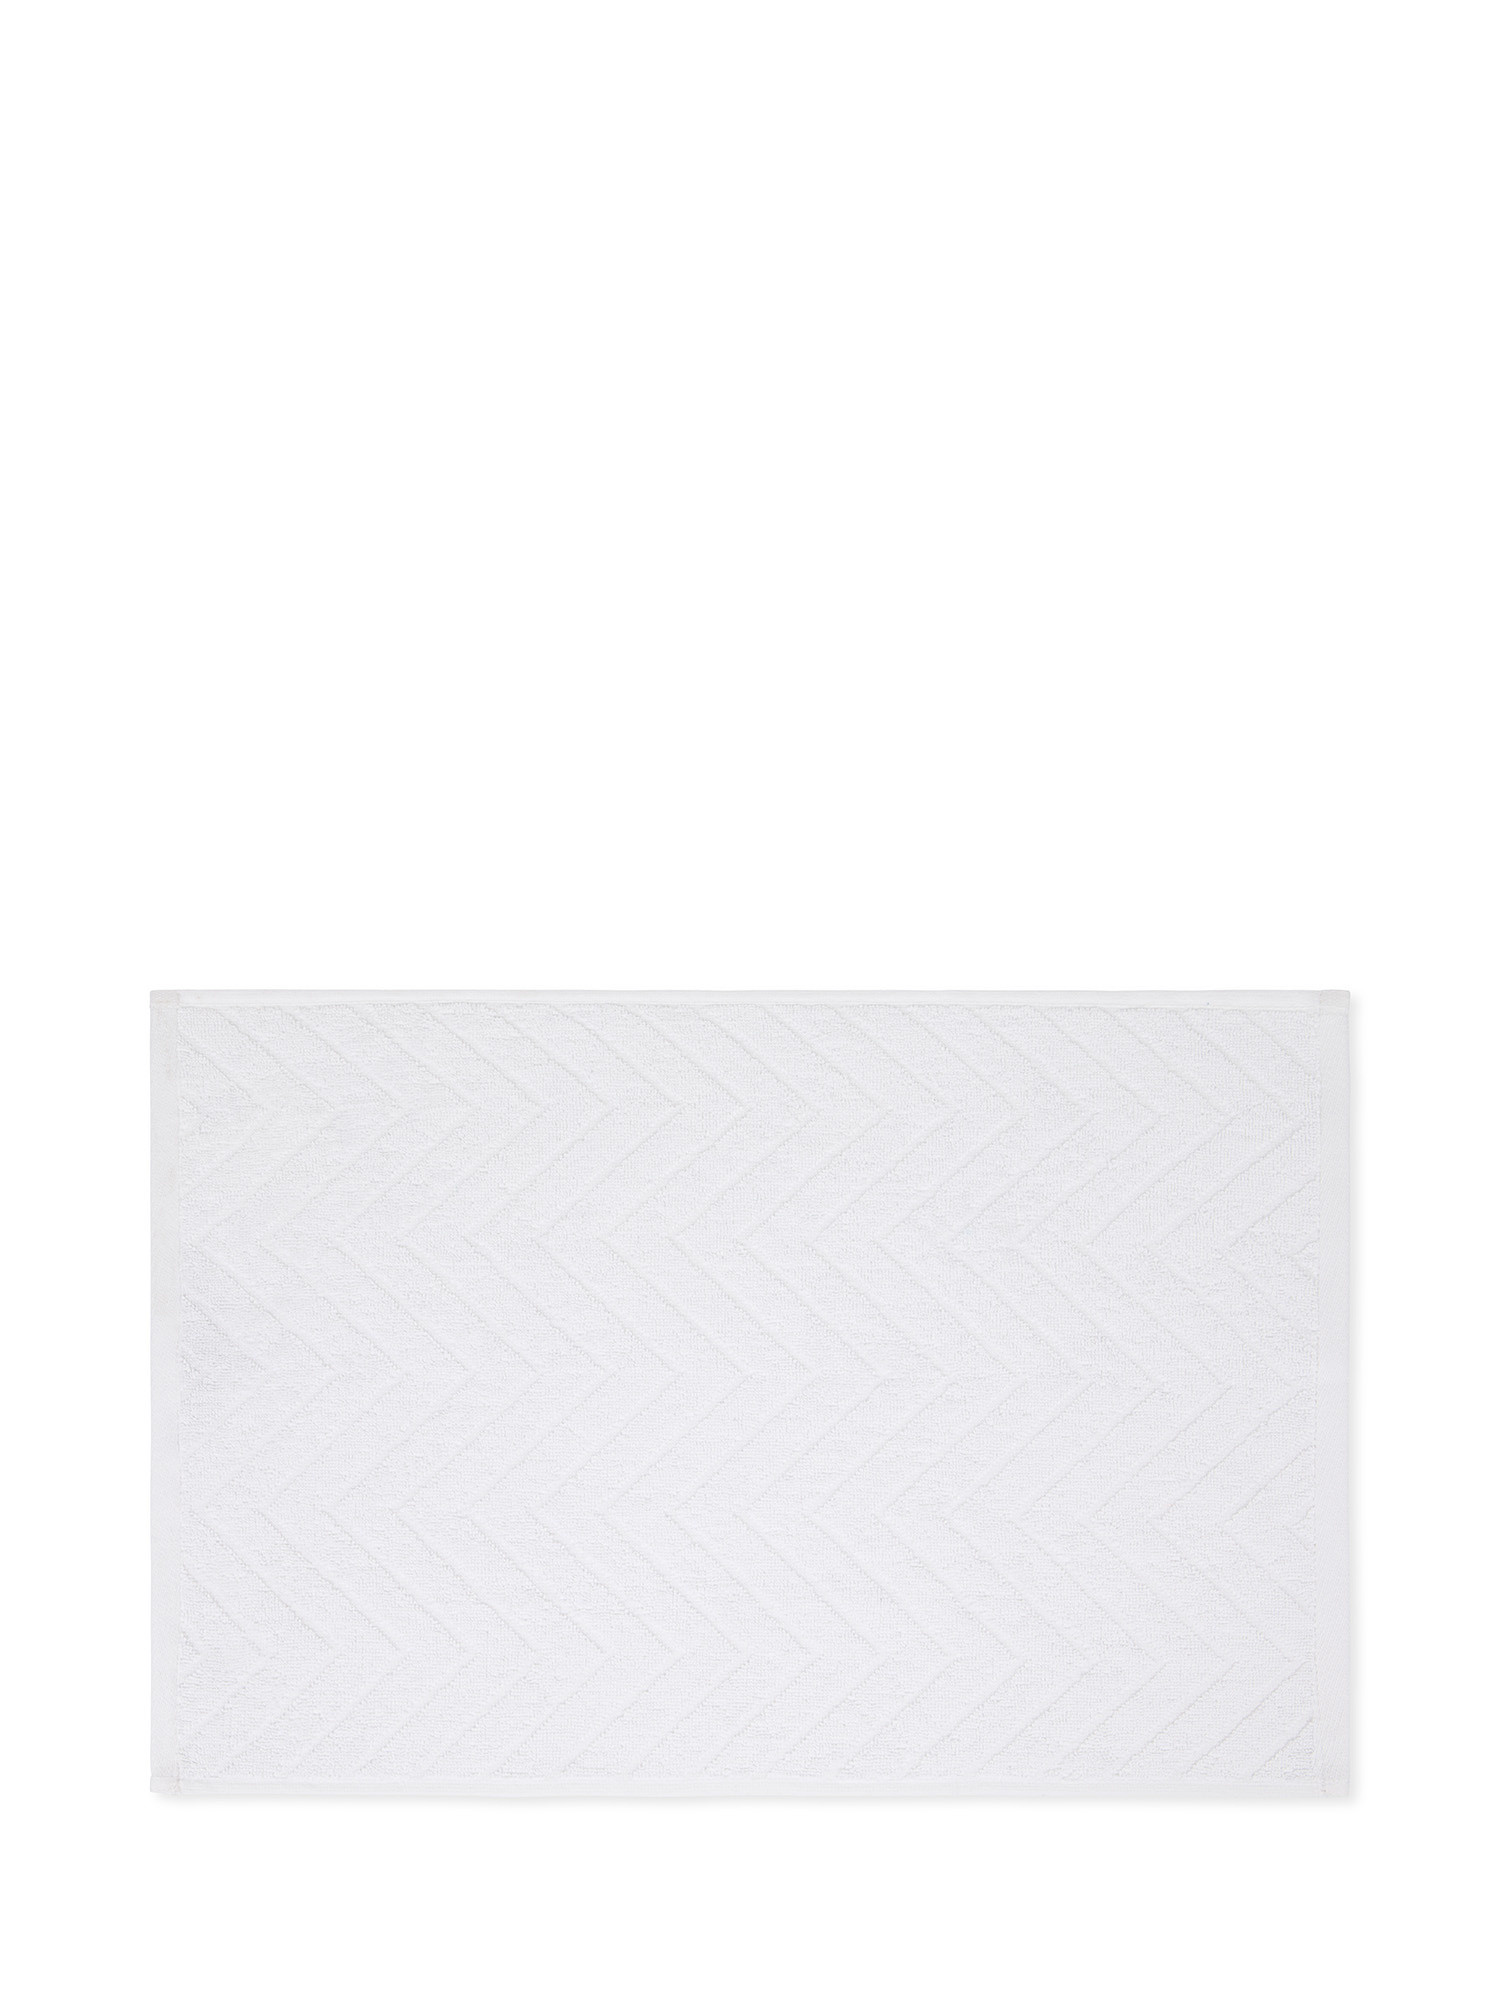 Asciugamano in spugna di cotone con disegno Jacquard, Bianco, large image number 1